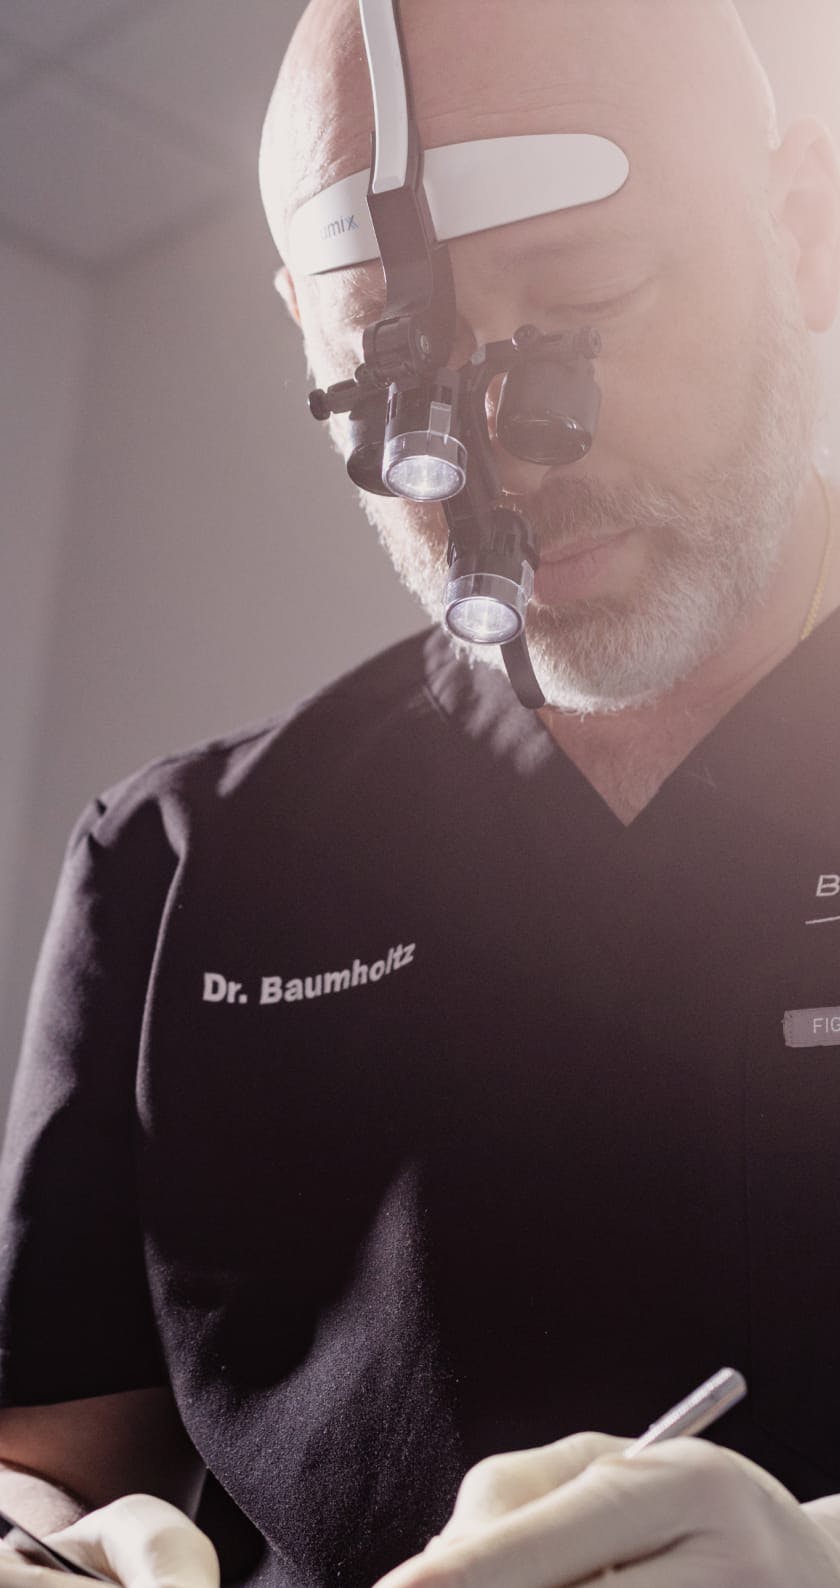 Dr. Baumholtz